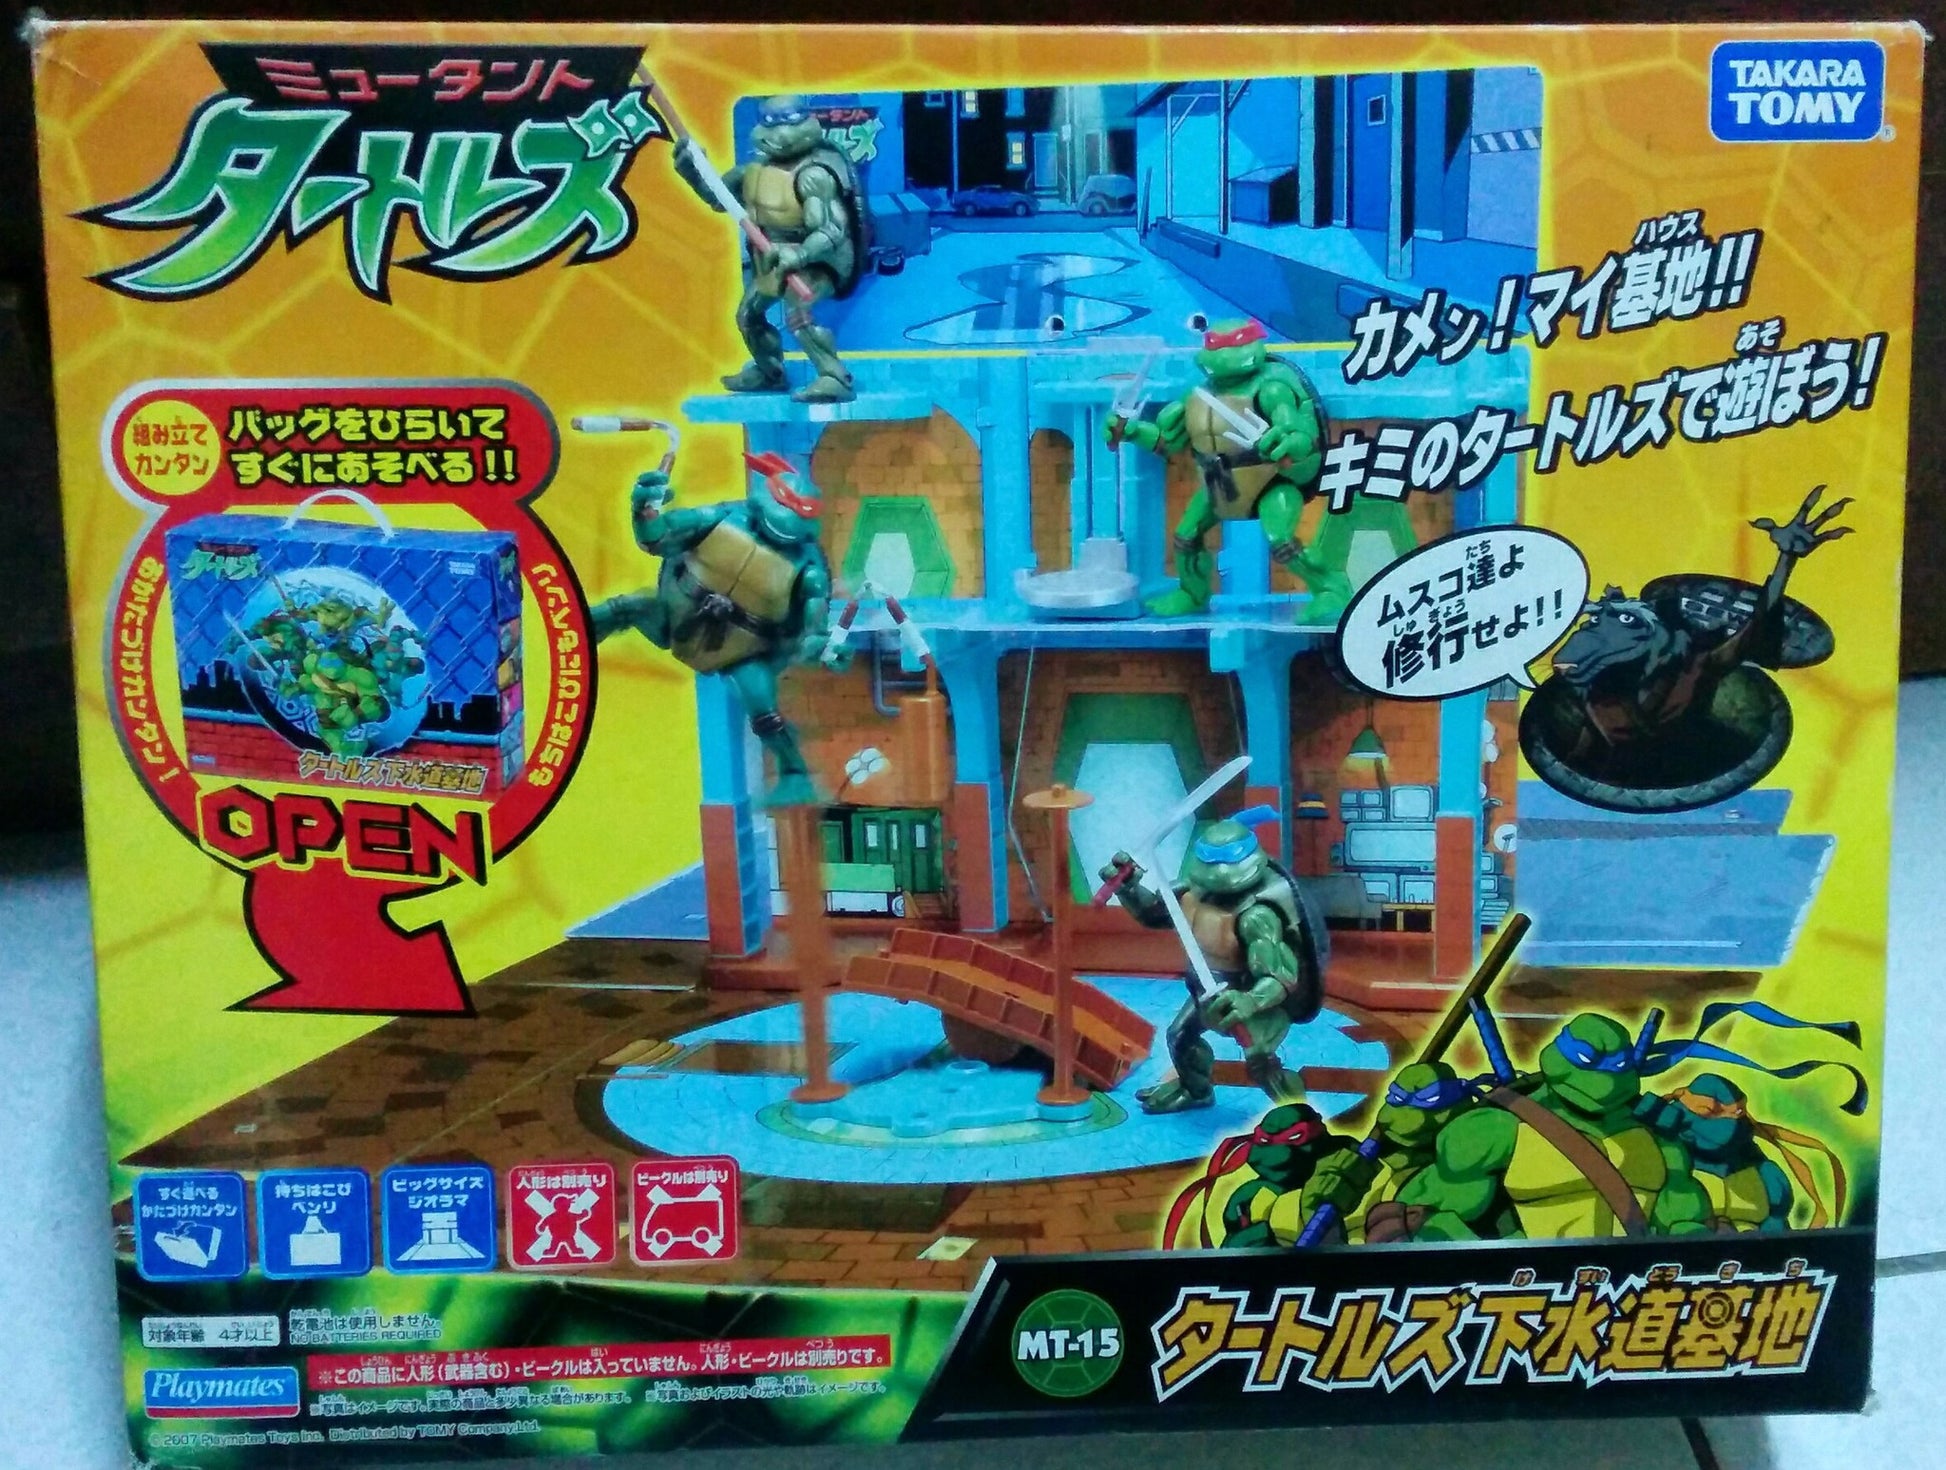 Takara Tomy TMNT Teenage Mutant Ninja Turtles MT-15 Sewer Base Play Set - Lavits Figure
 - 1